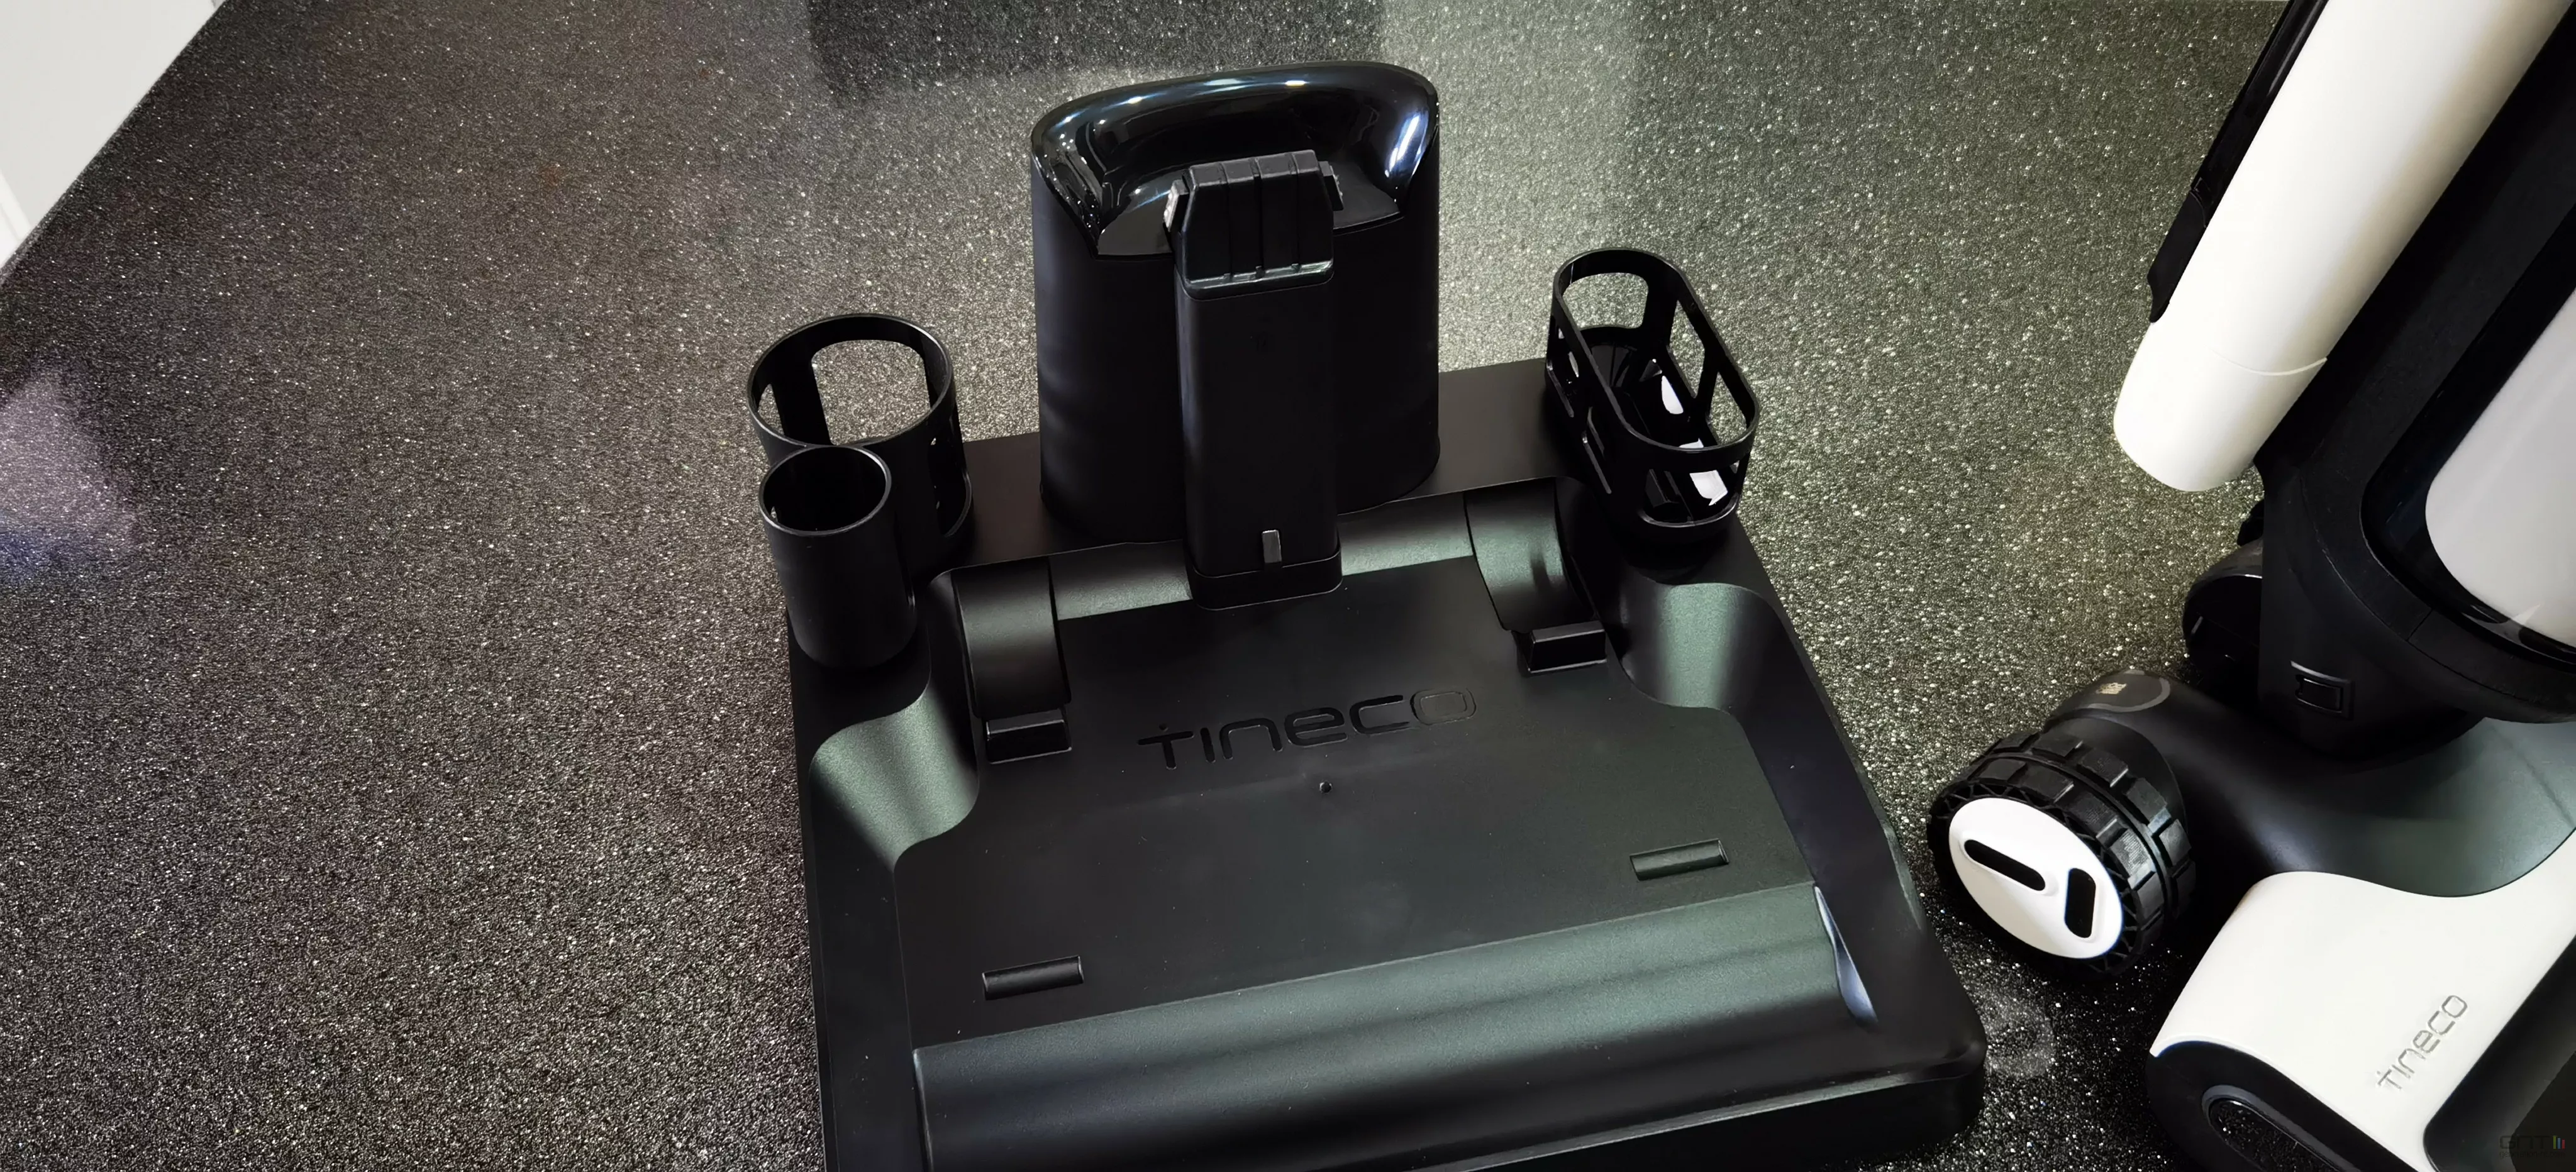 Tineco Floor One S7 Pro : test d'un étonnant laveur de sols autonettoyant -  % Objets du Futur